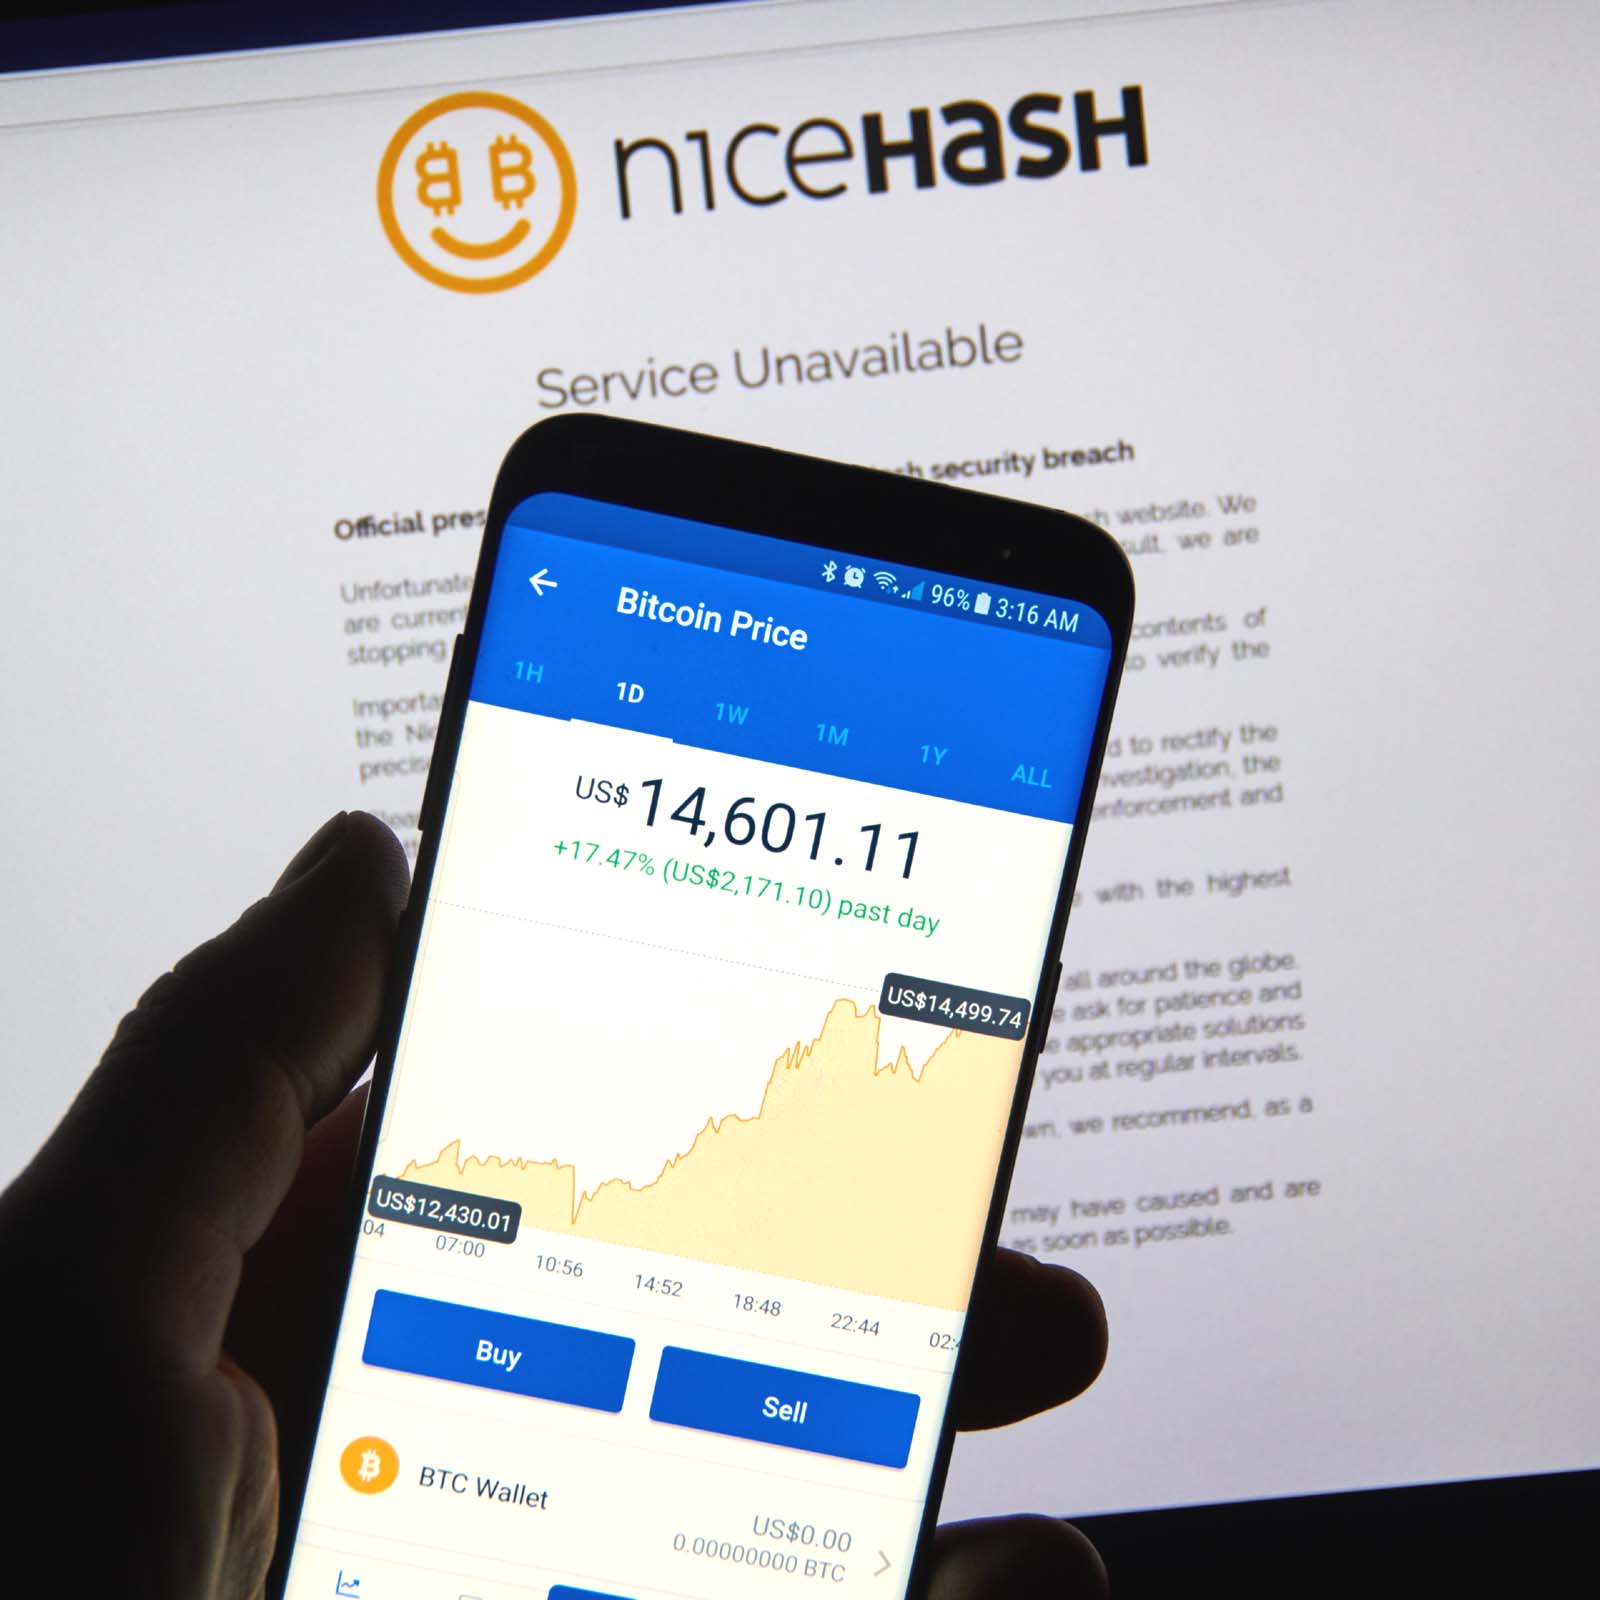 Nicehash Returns 60% of Coins Stolen in the Hack